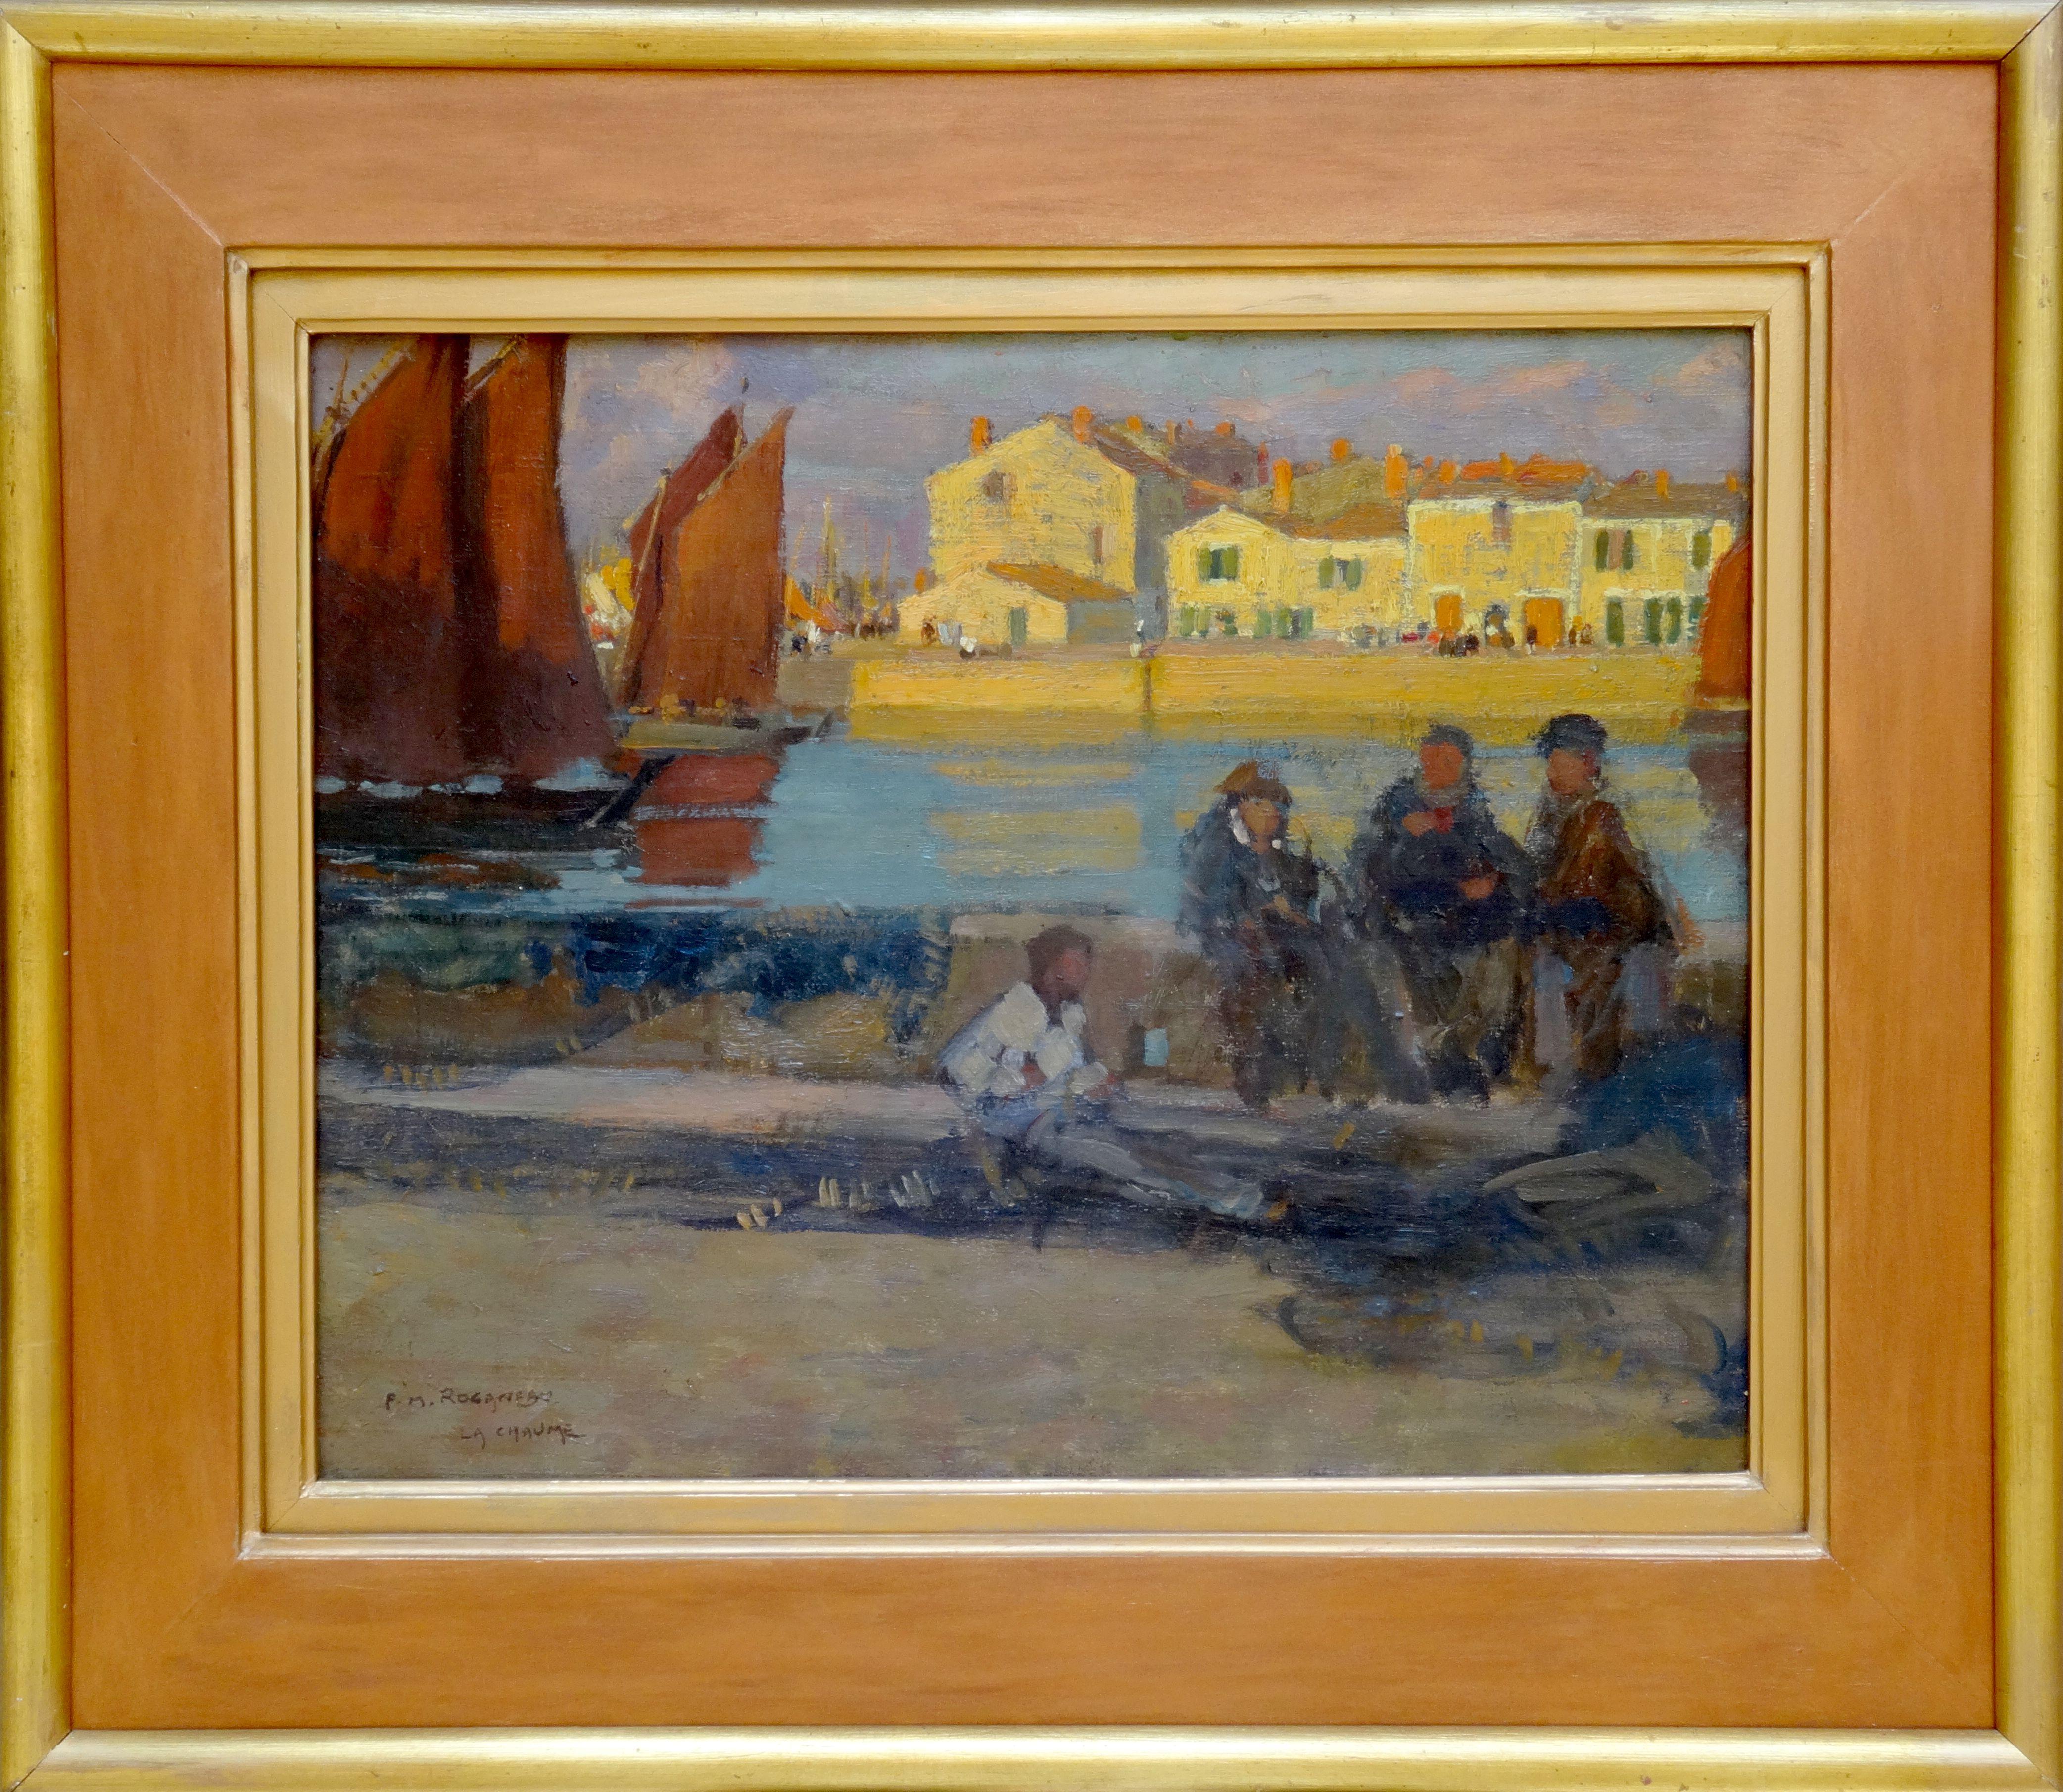 Le port de la Chaume. Oil on canvas, 33x41 cm - Painting by Francois-Maurice Roganeau